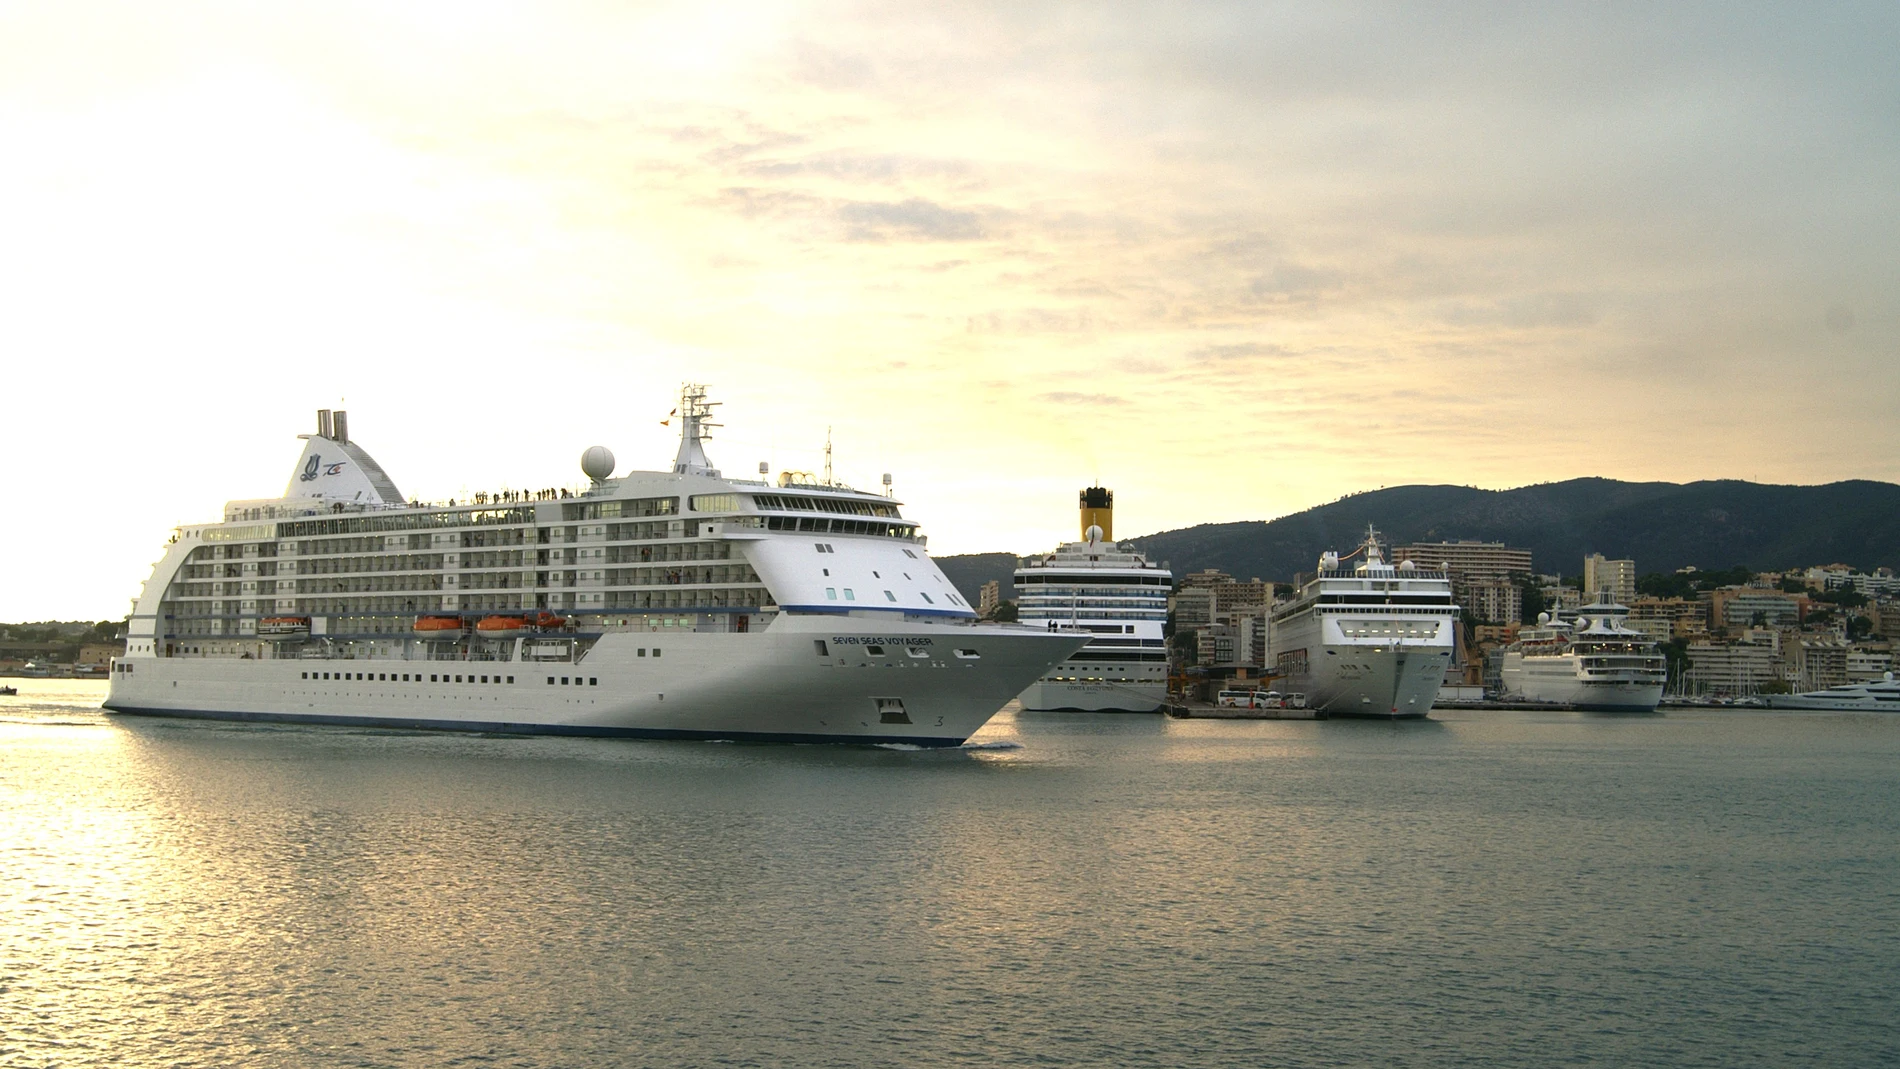 El turista de crucero consume una media 90 litros de agua al año en el puerto de Palma, según la APB